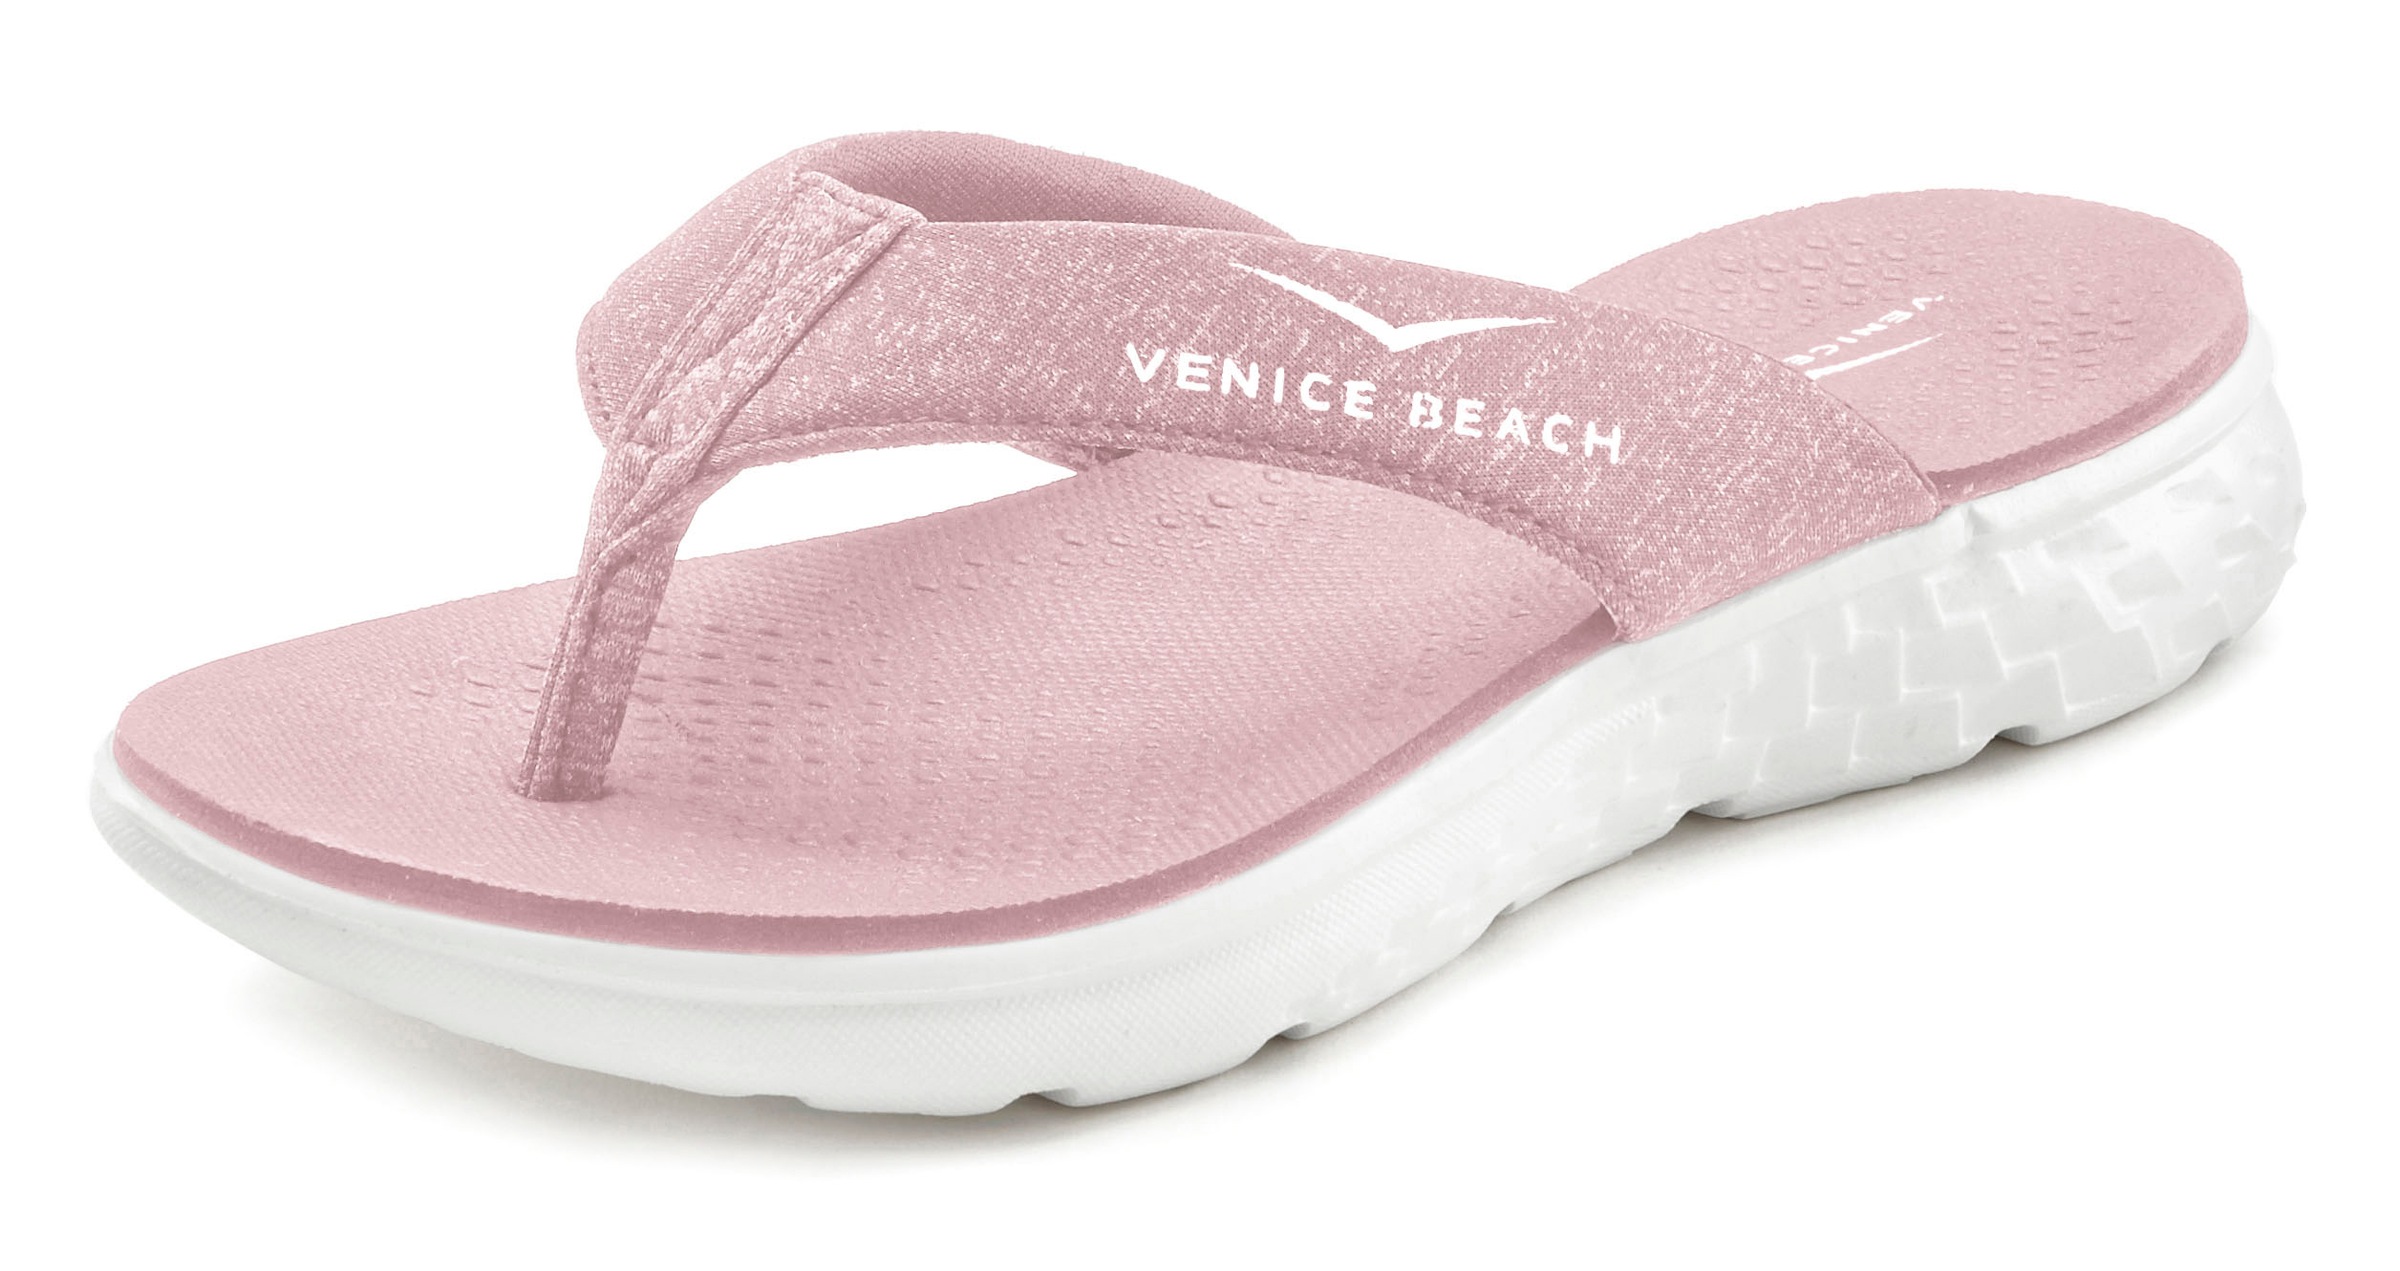 Venice Beach Badezehentrenner, Sandale, Pantolette, Badeschuh ultraleicht im sportiven Look VEGAN